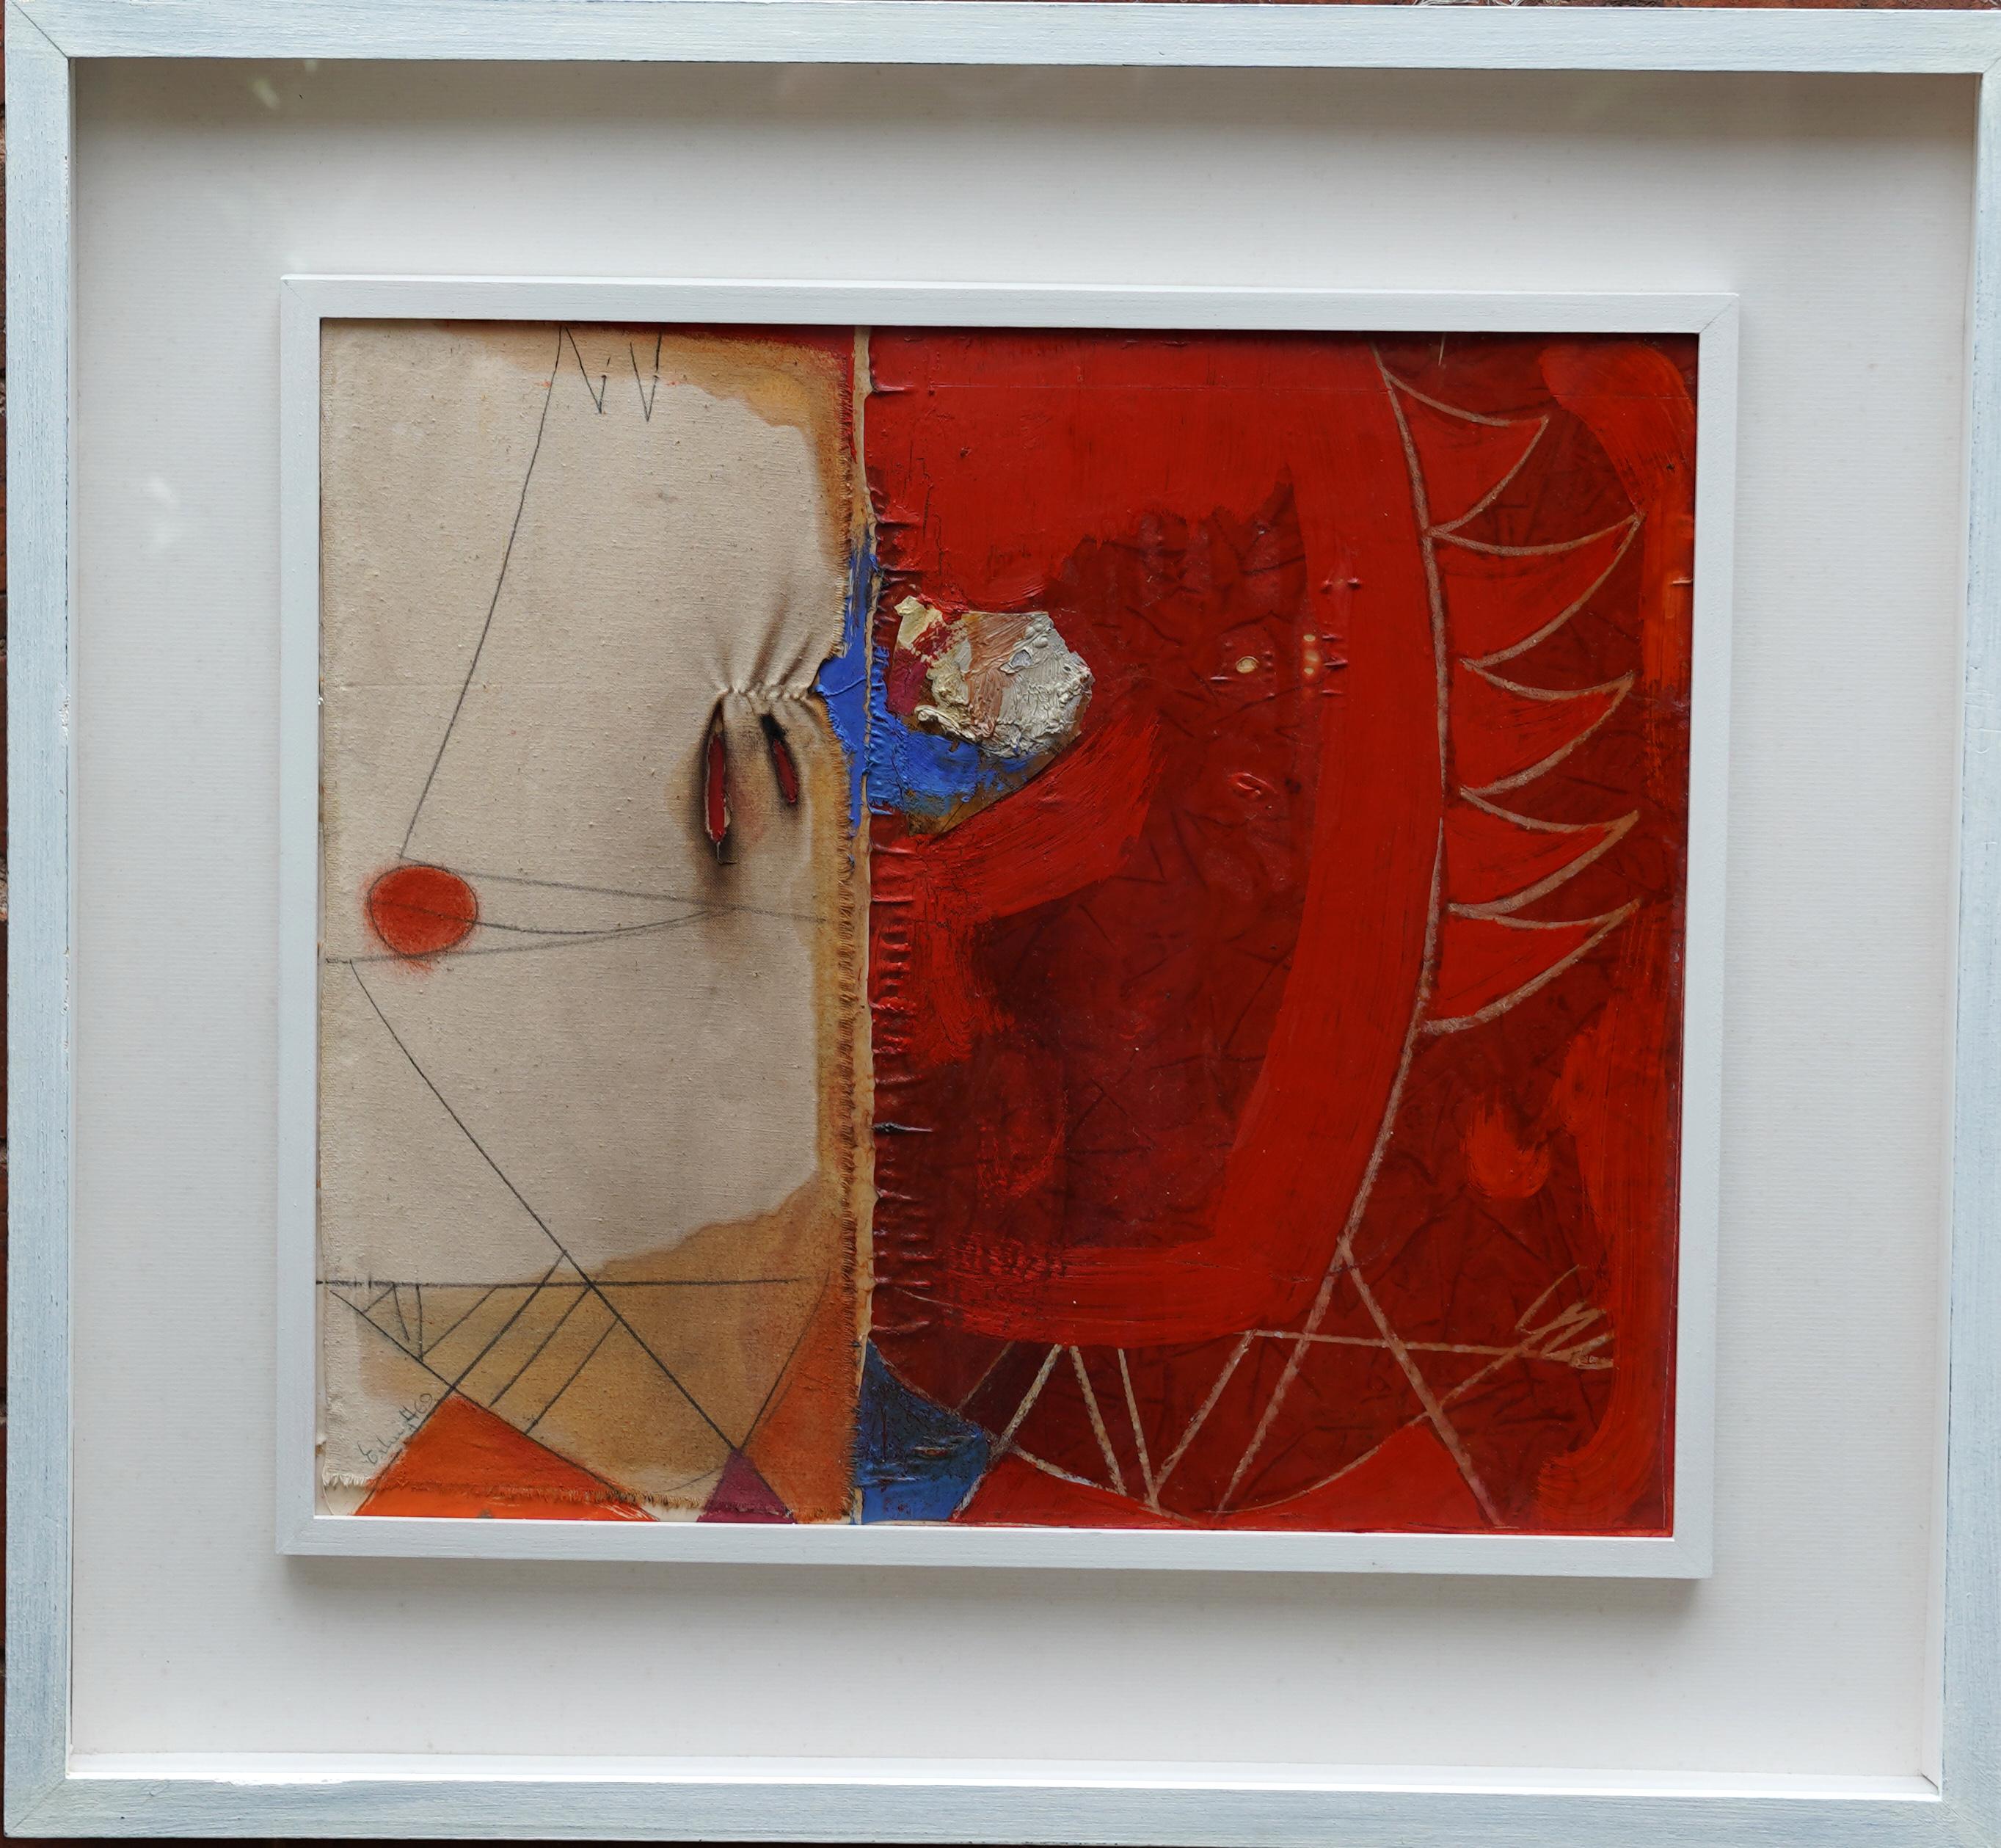 Erling Andersen Abstract Painting – Abstrakte Komposition - Dänische abstrakte Kunst 1969 Mixed-Media-Gemälde